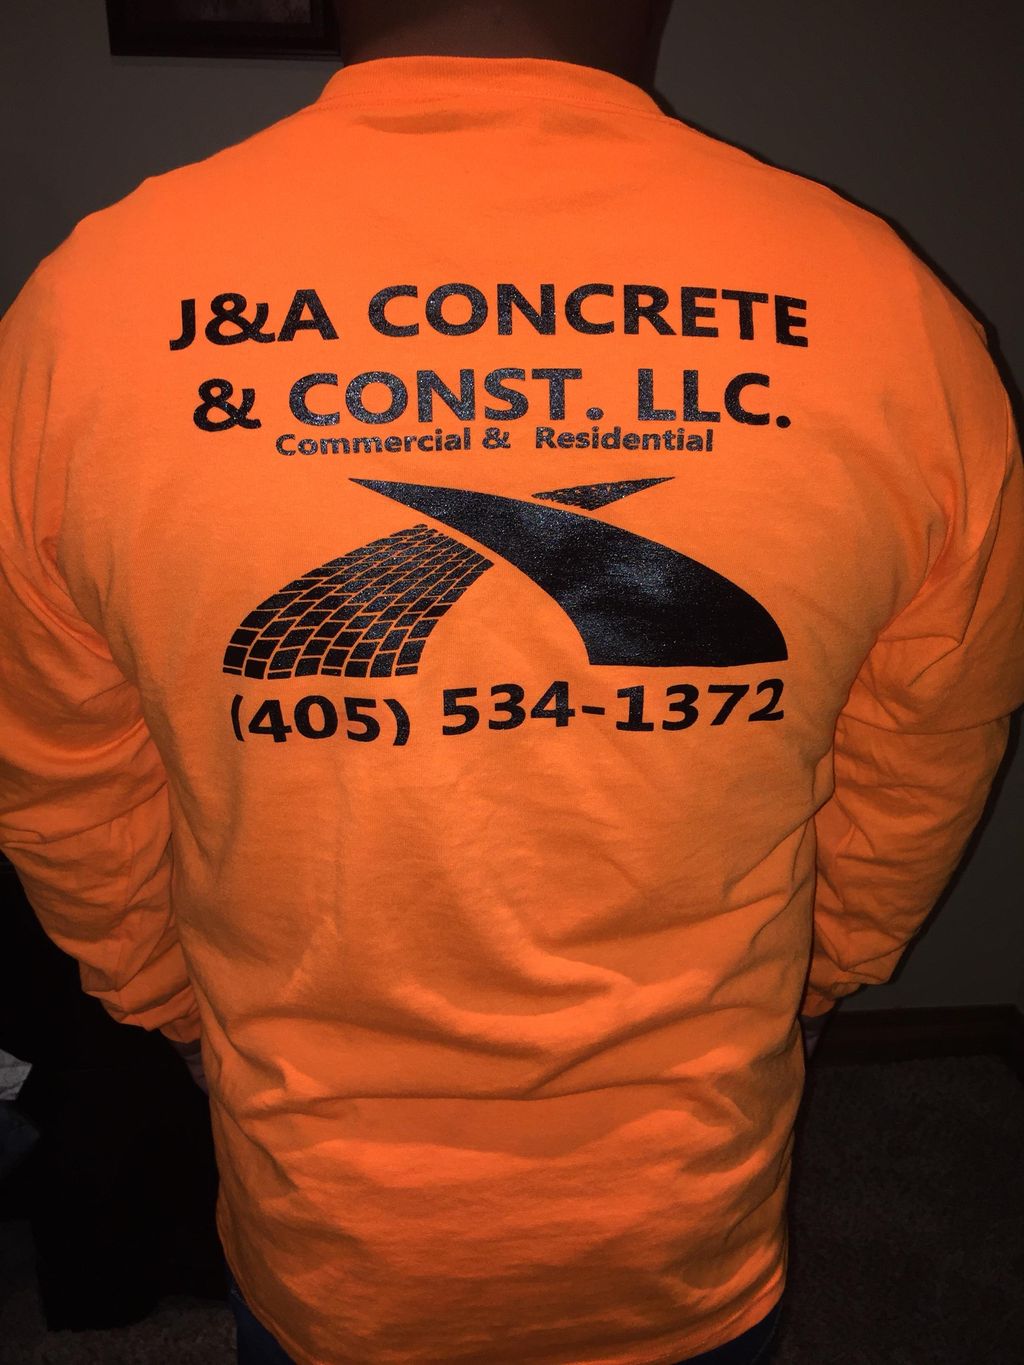 J&A concrete & construction llc